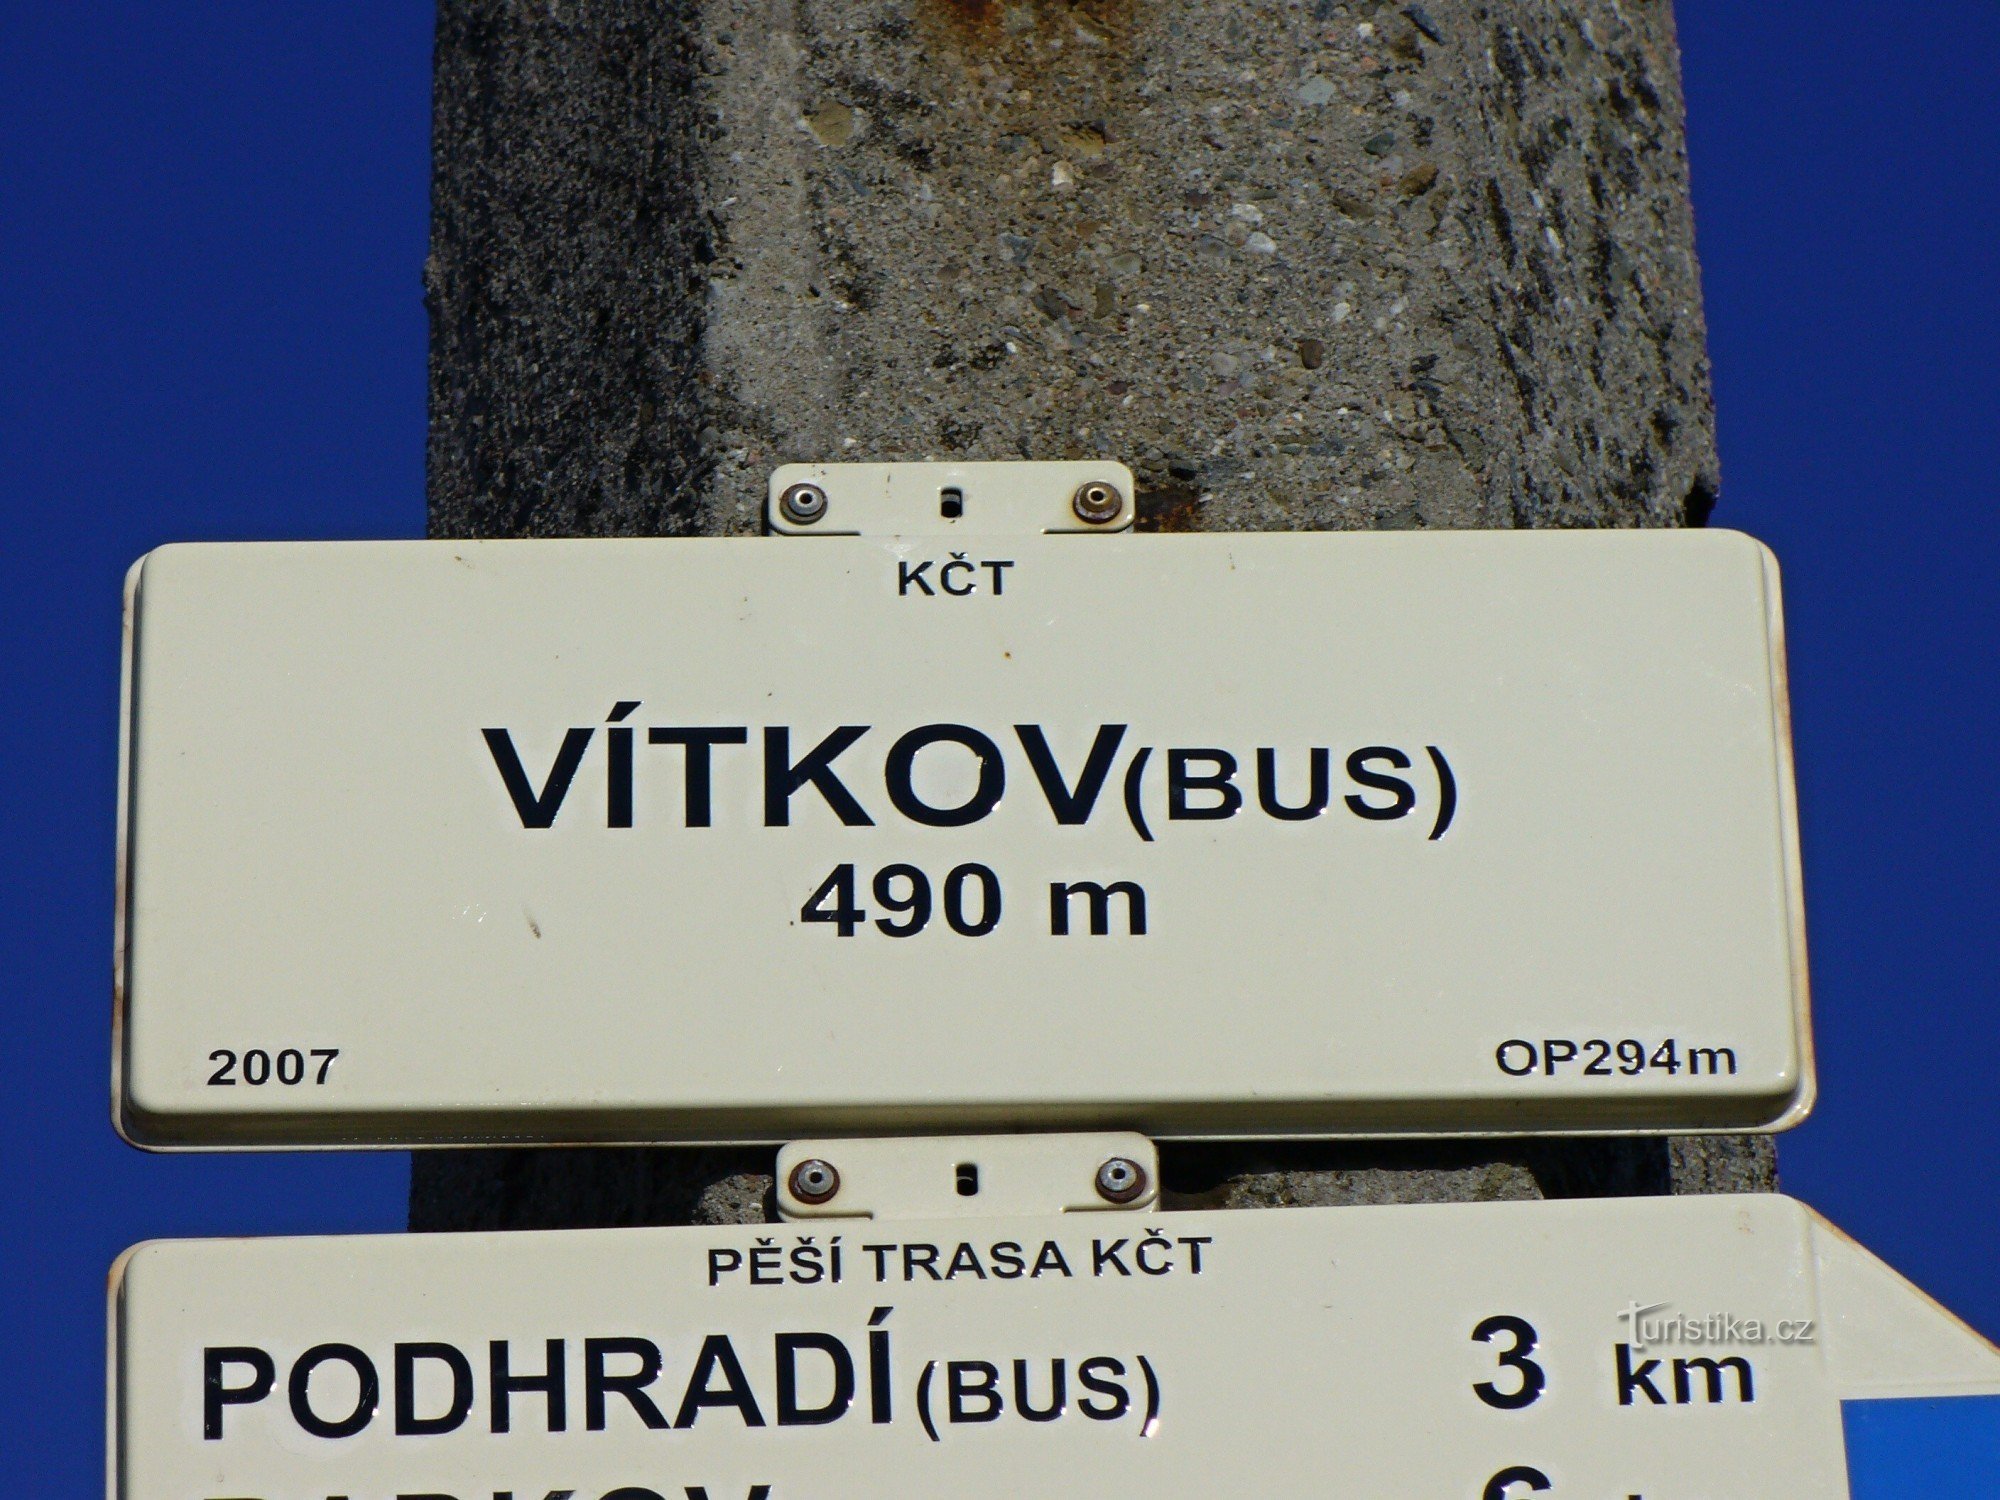 Biển chỉ dẫn - Vítkov BUS